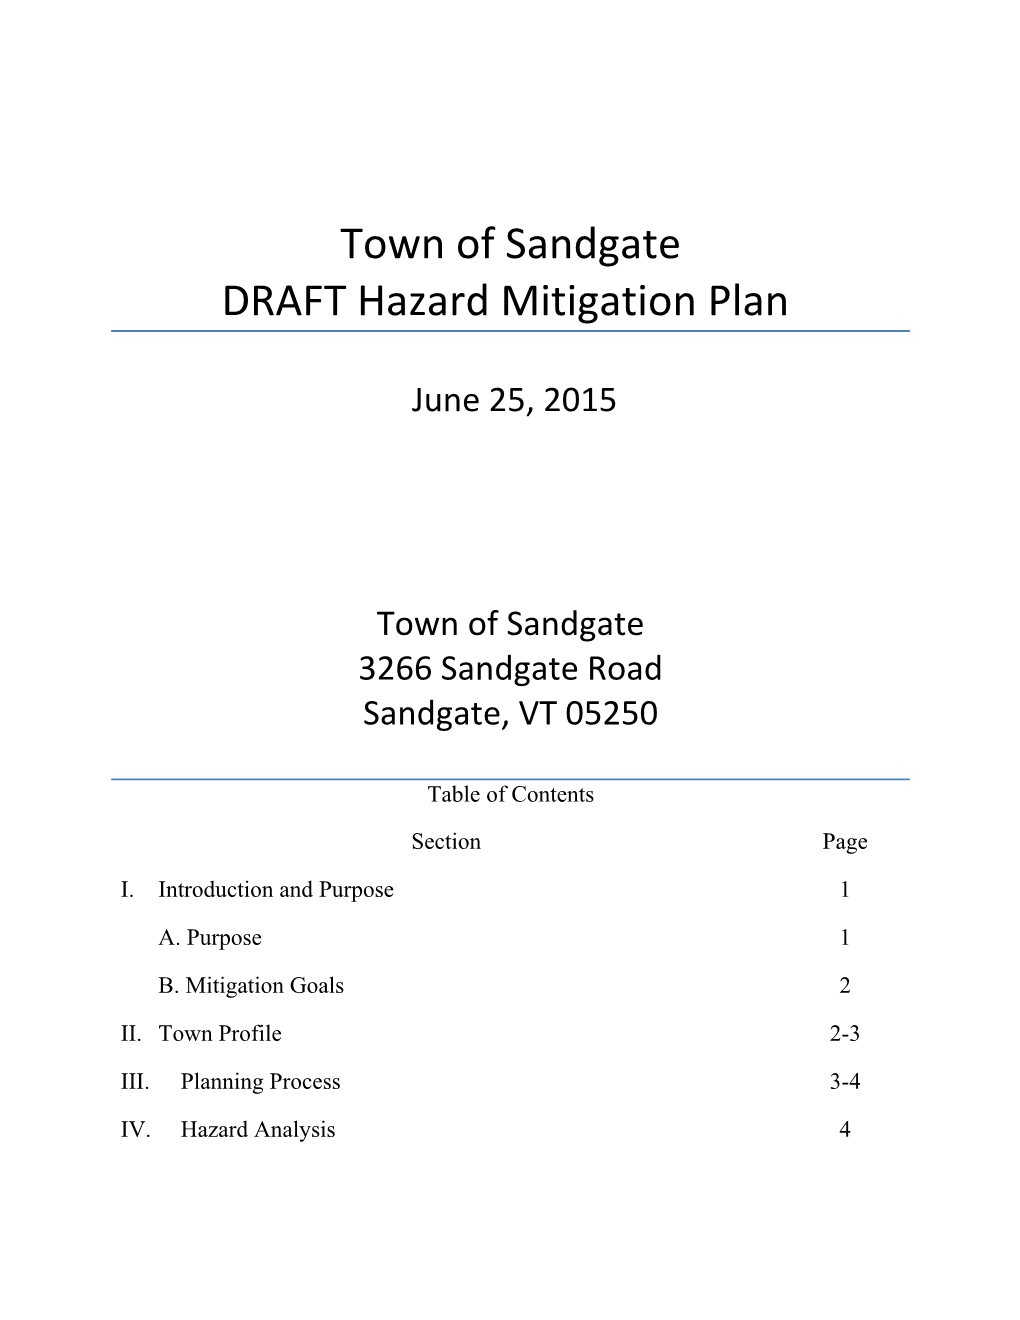 Town of Sunderland Hazard Mitigation Plan